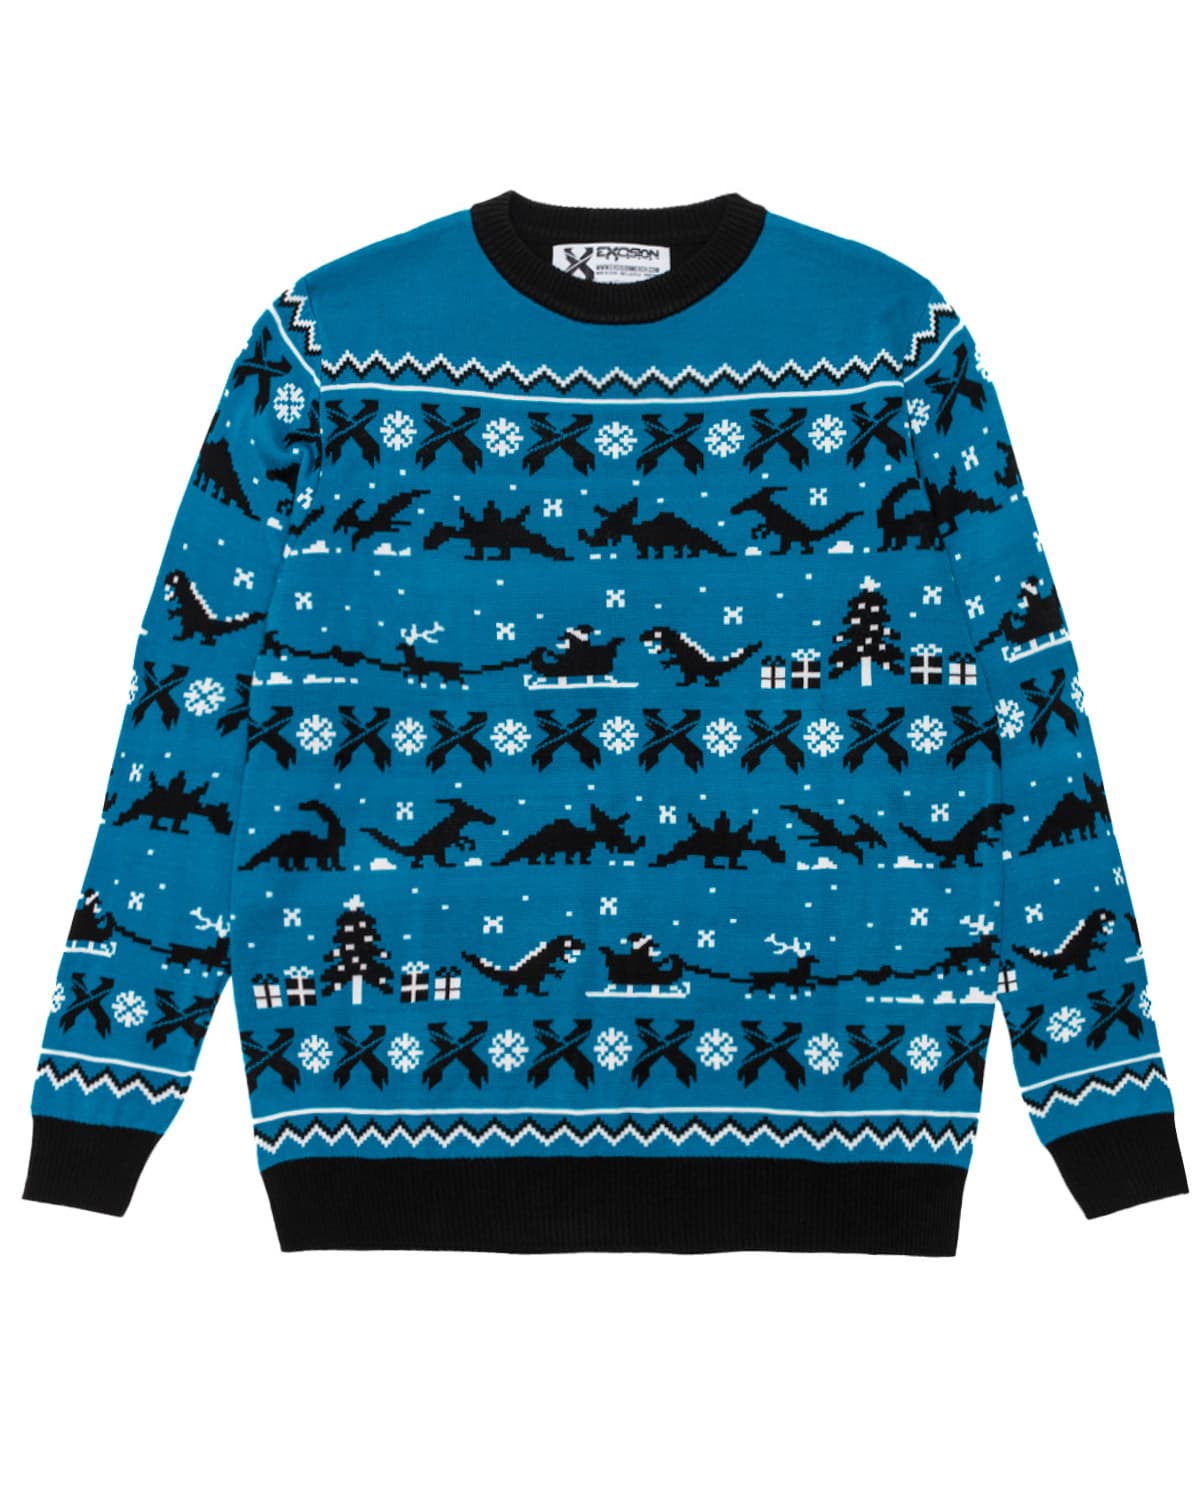 Merry Rexmas Jacquard Knit Sweater (Blue)